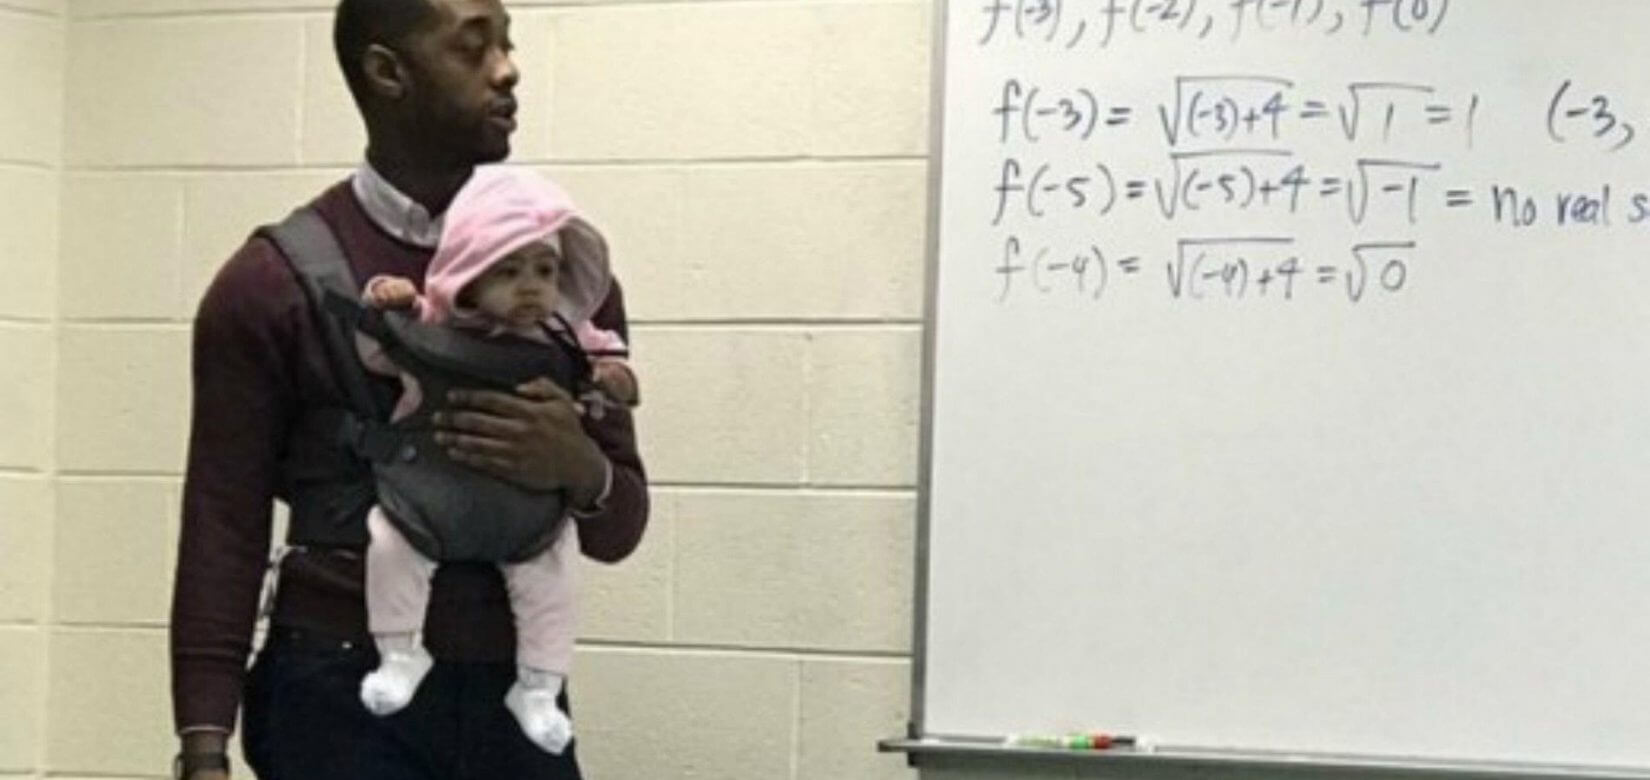 Καθηγητής κράτησε στην αγκαλιά το μωρό φοιτητή εν ώρα μαθήματος επειδή ο μπαμπάς της δεν έβρισκε νταντά